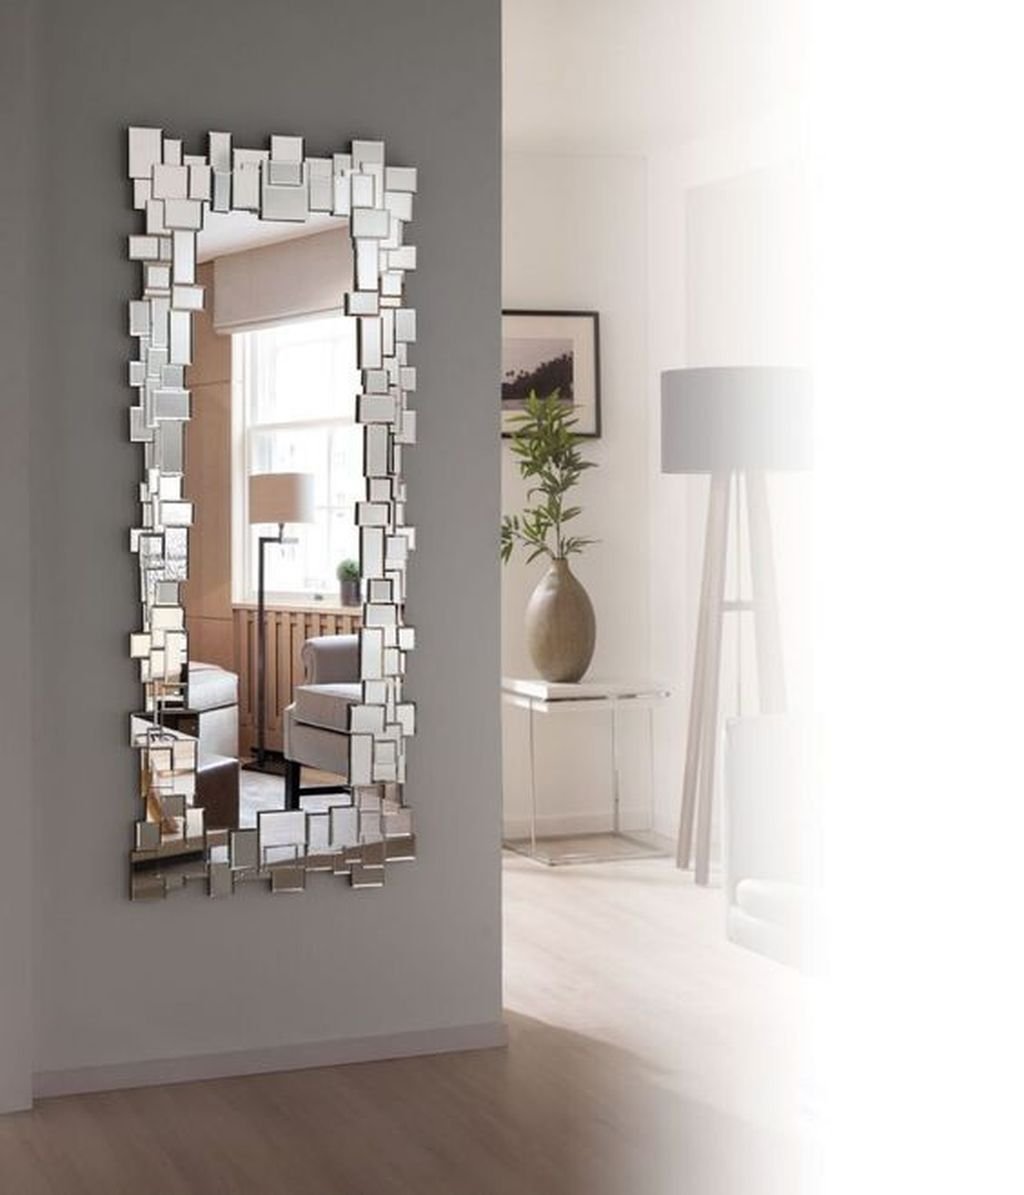 зеркало в коридоре на стене фото